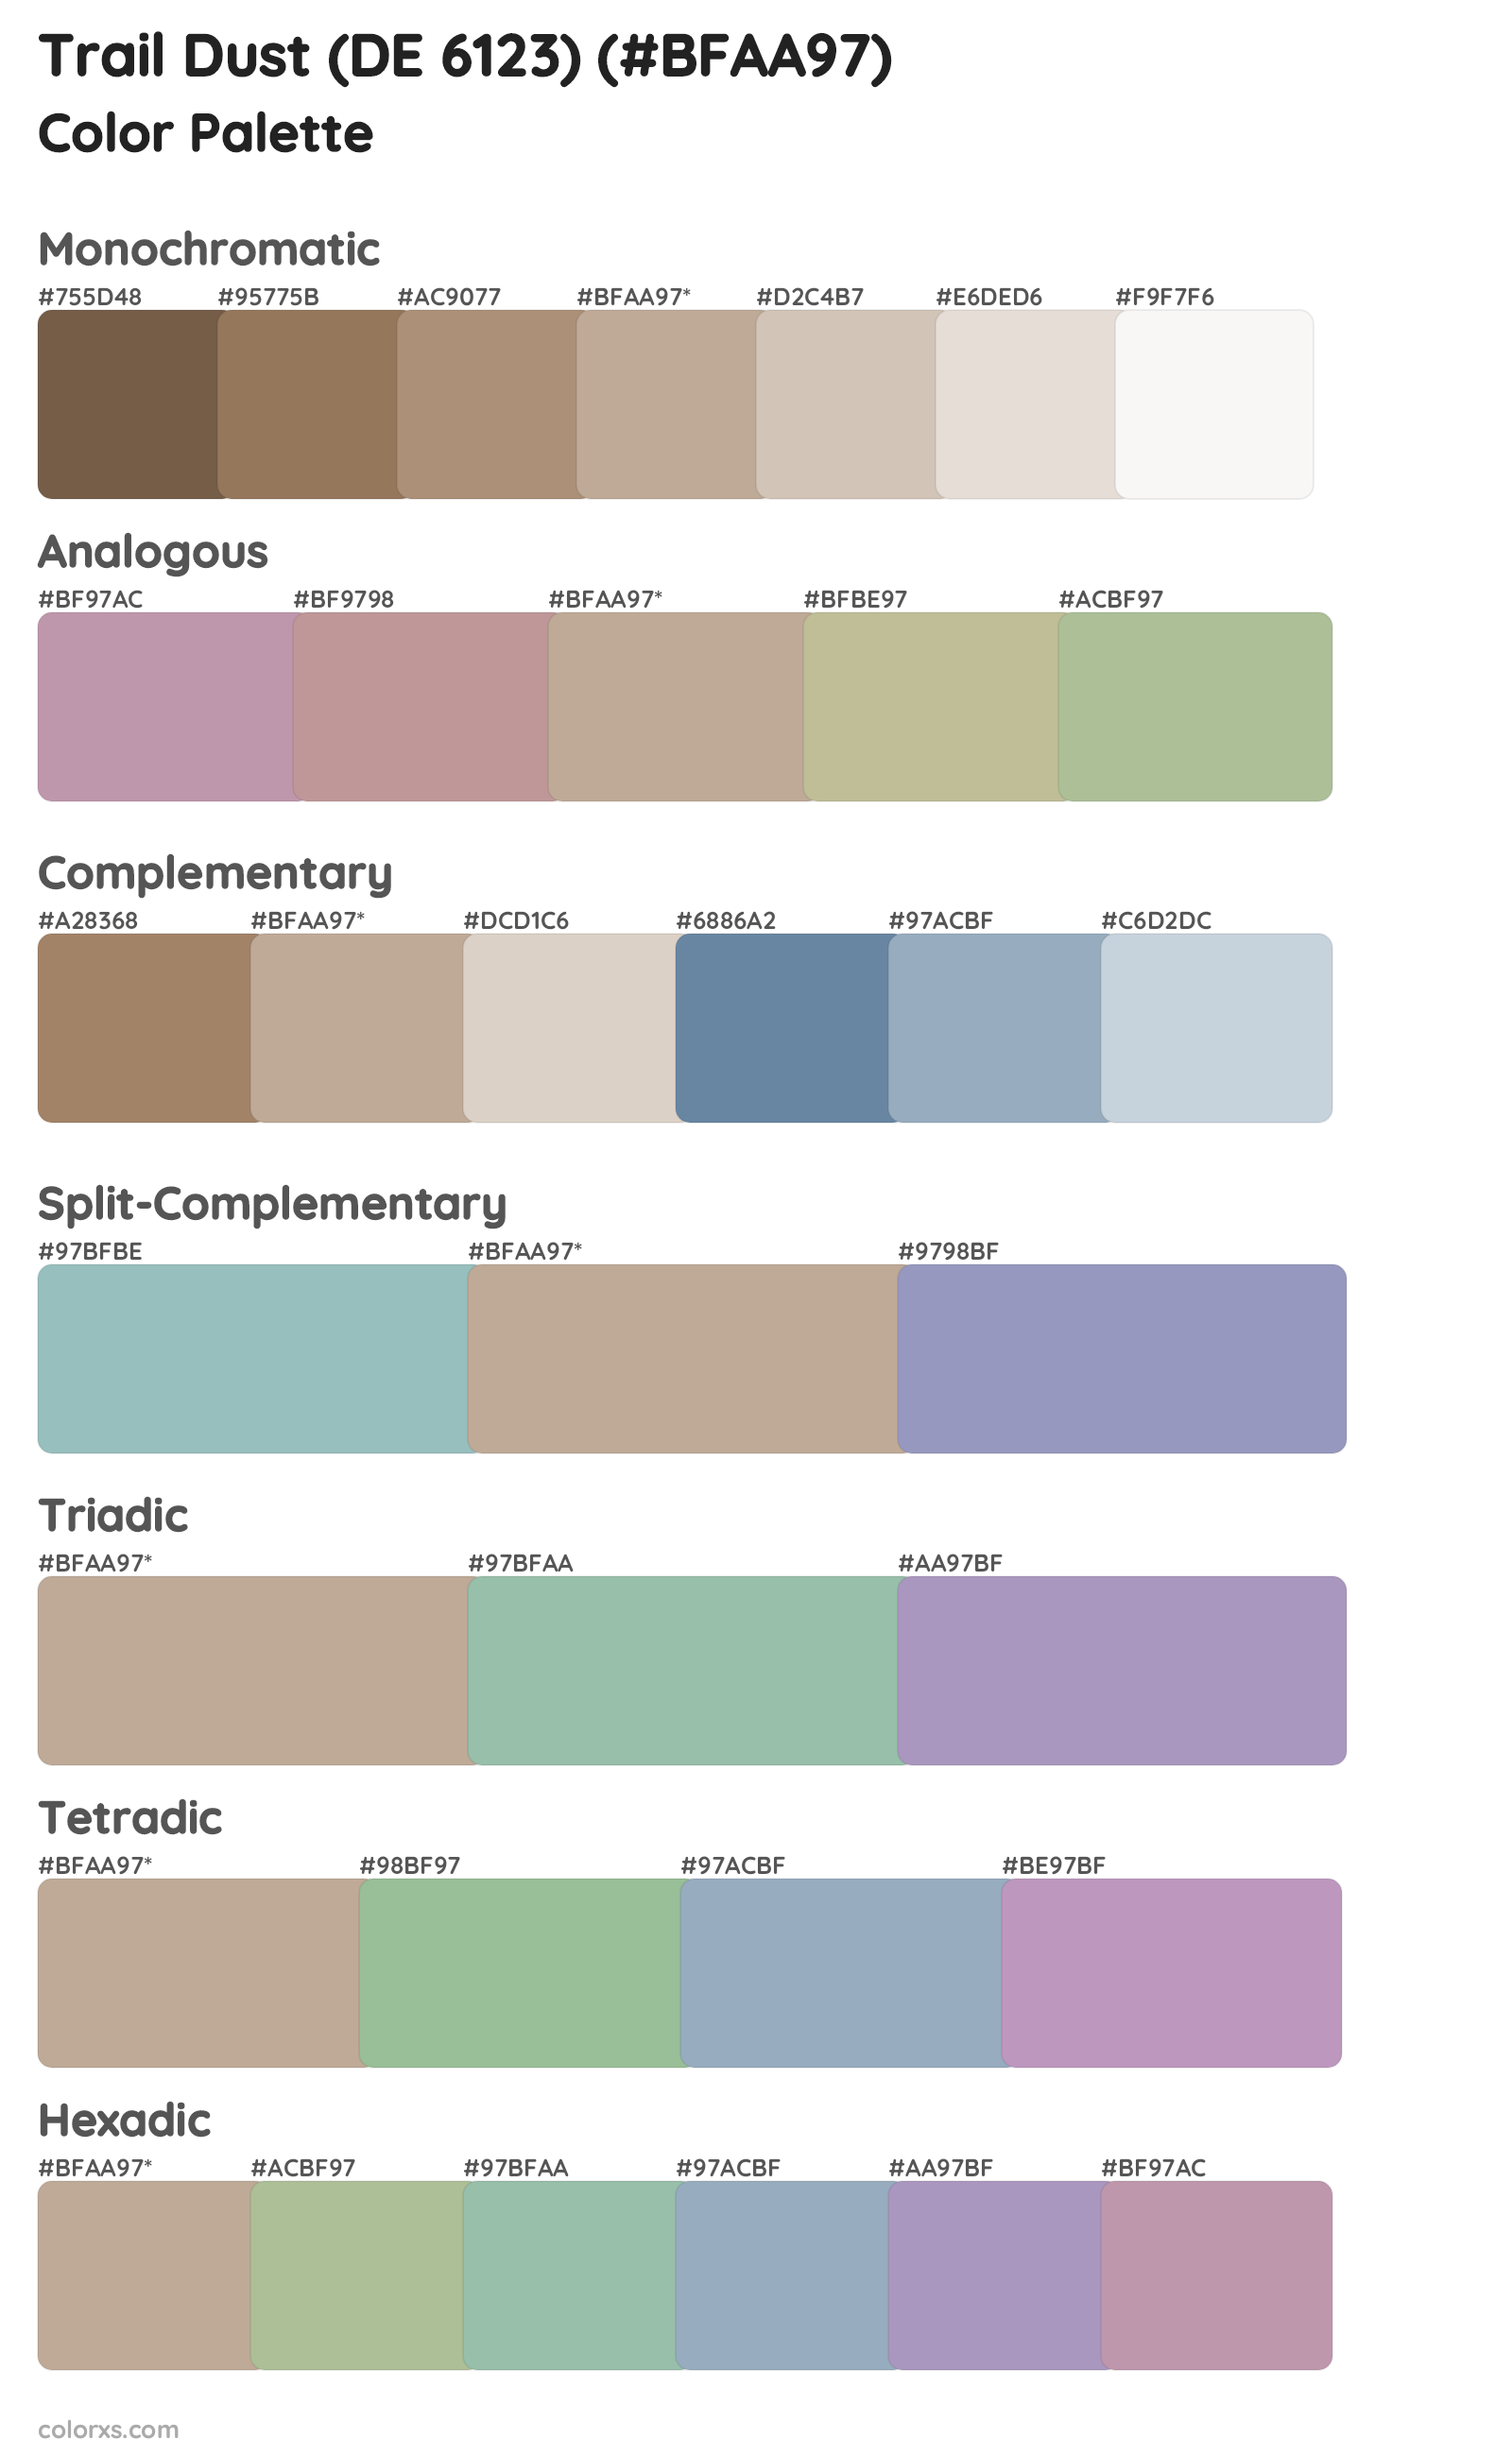 Trail Dust (DE 6123) Color Scheme Palettes